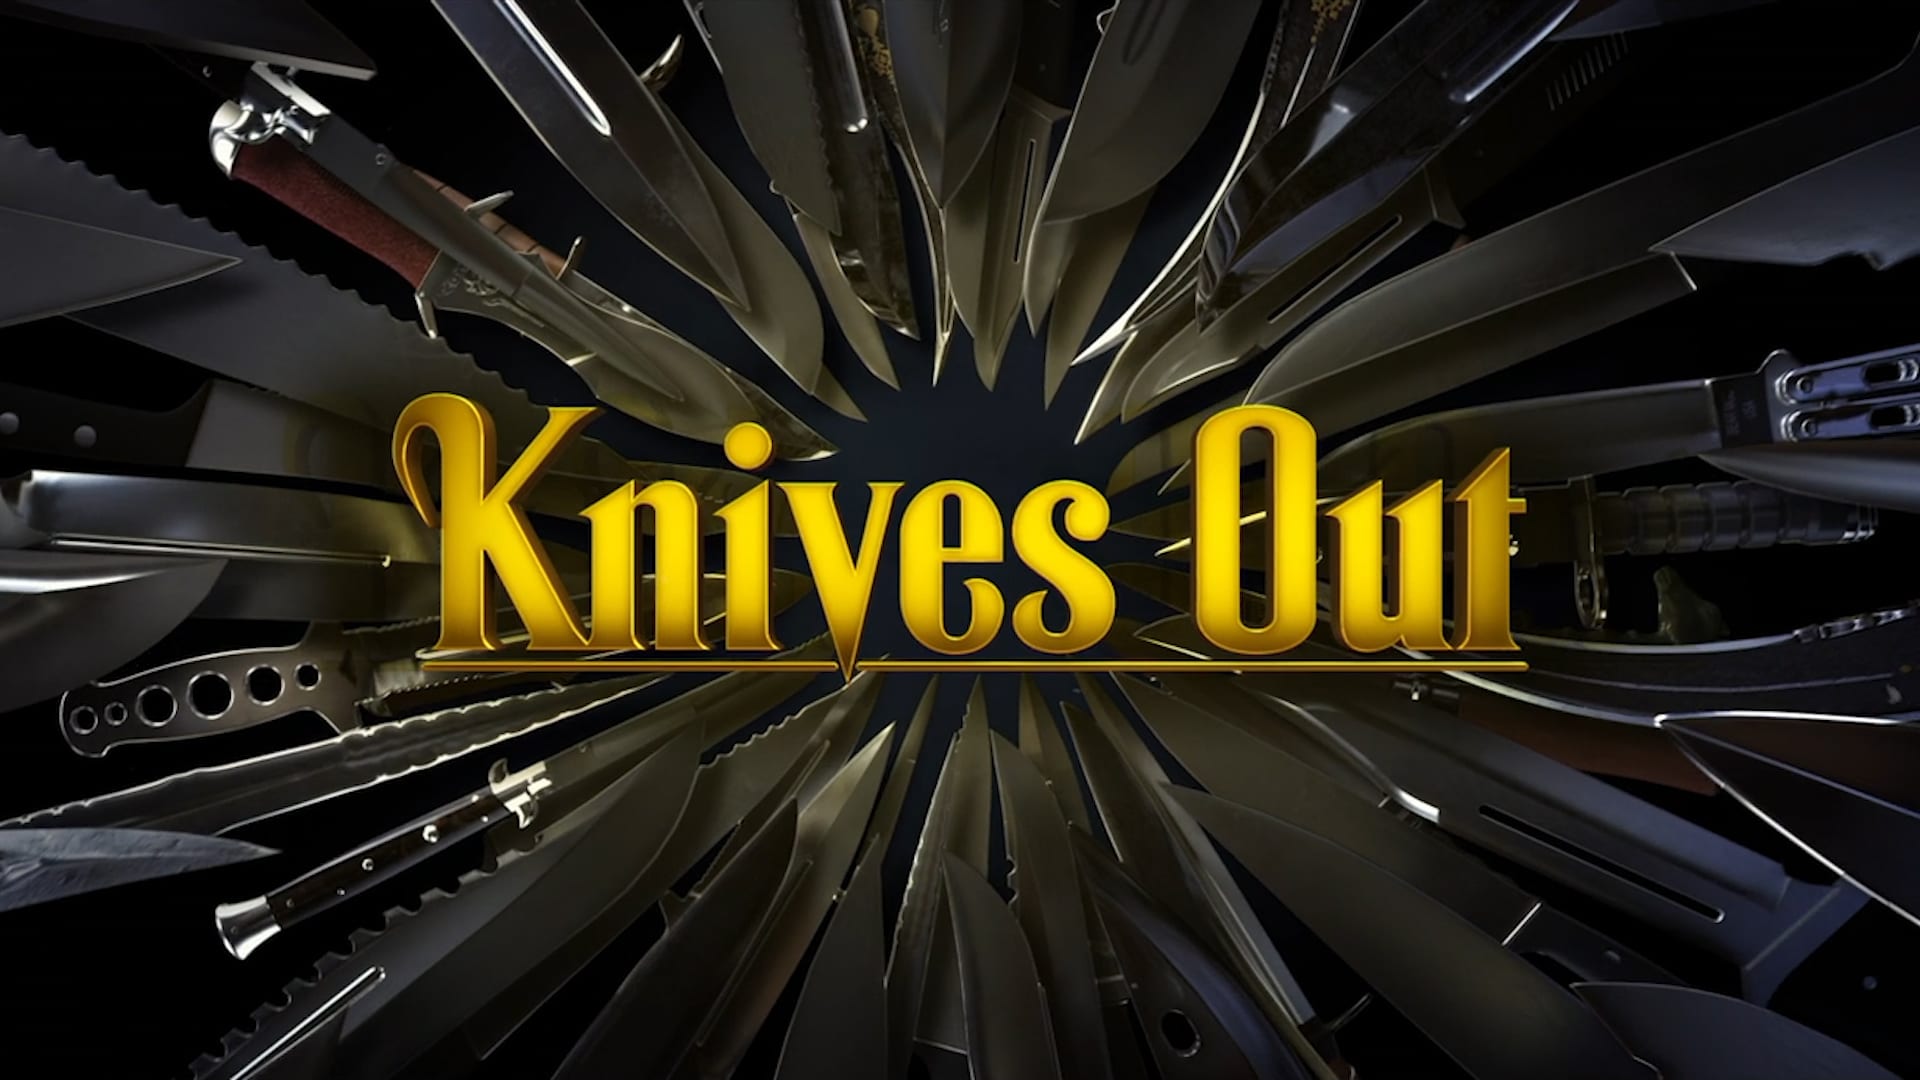 Достать ножи суть. Достать ножи / Knives out (2019). Достать ножи заставка.